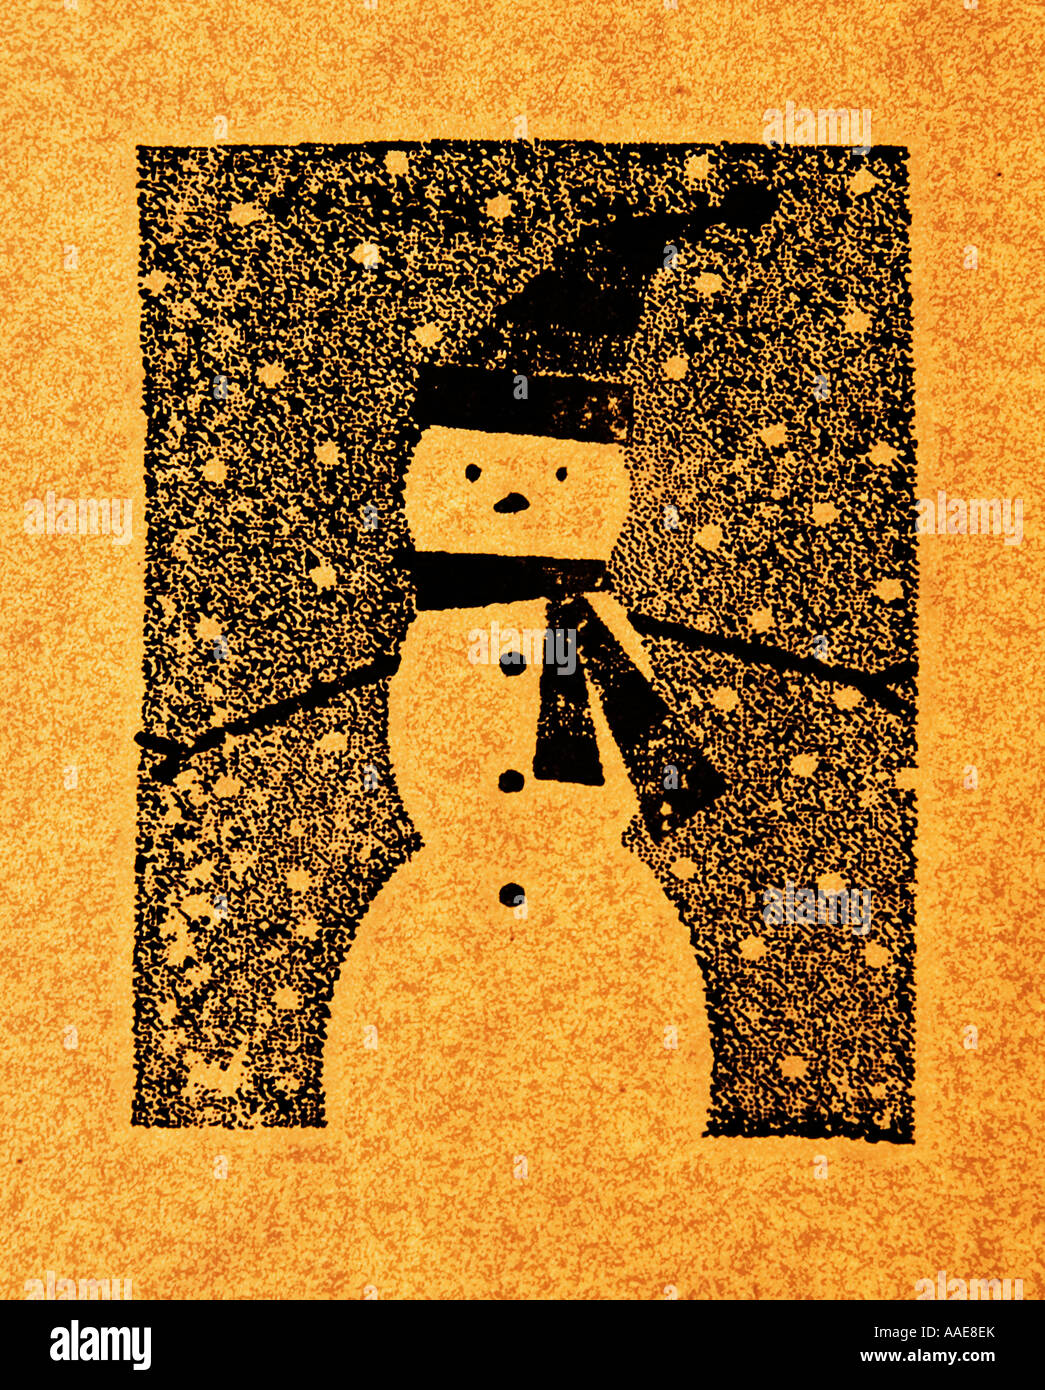 Snowman illustration Stock Photo